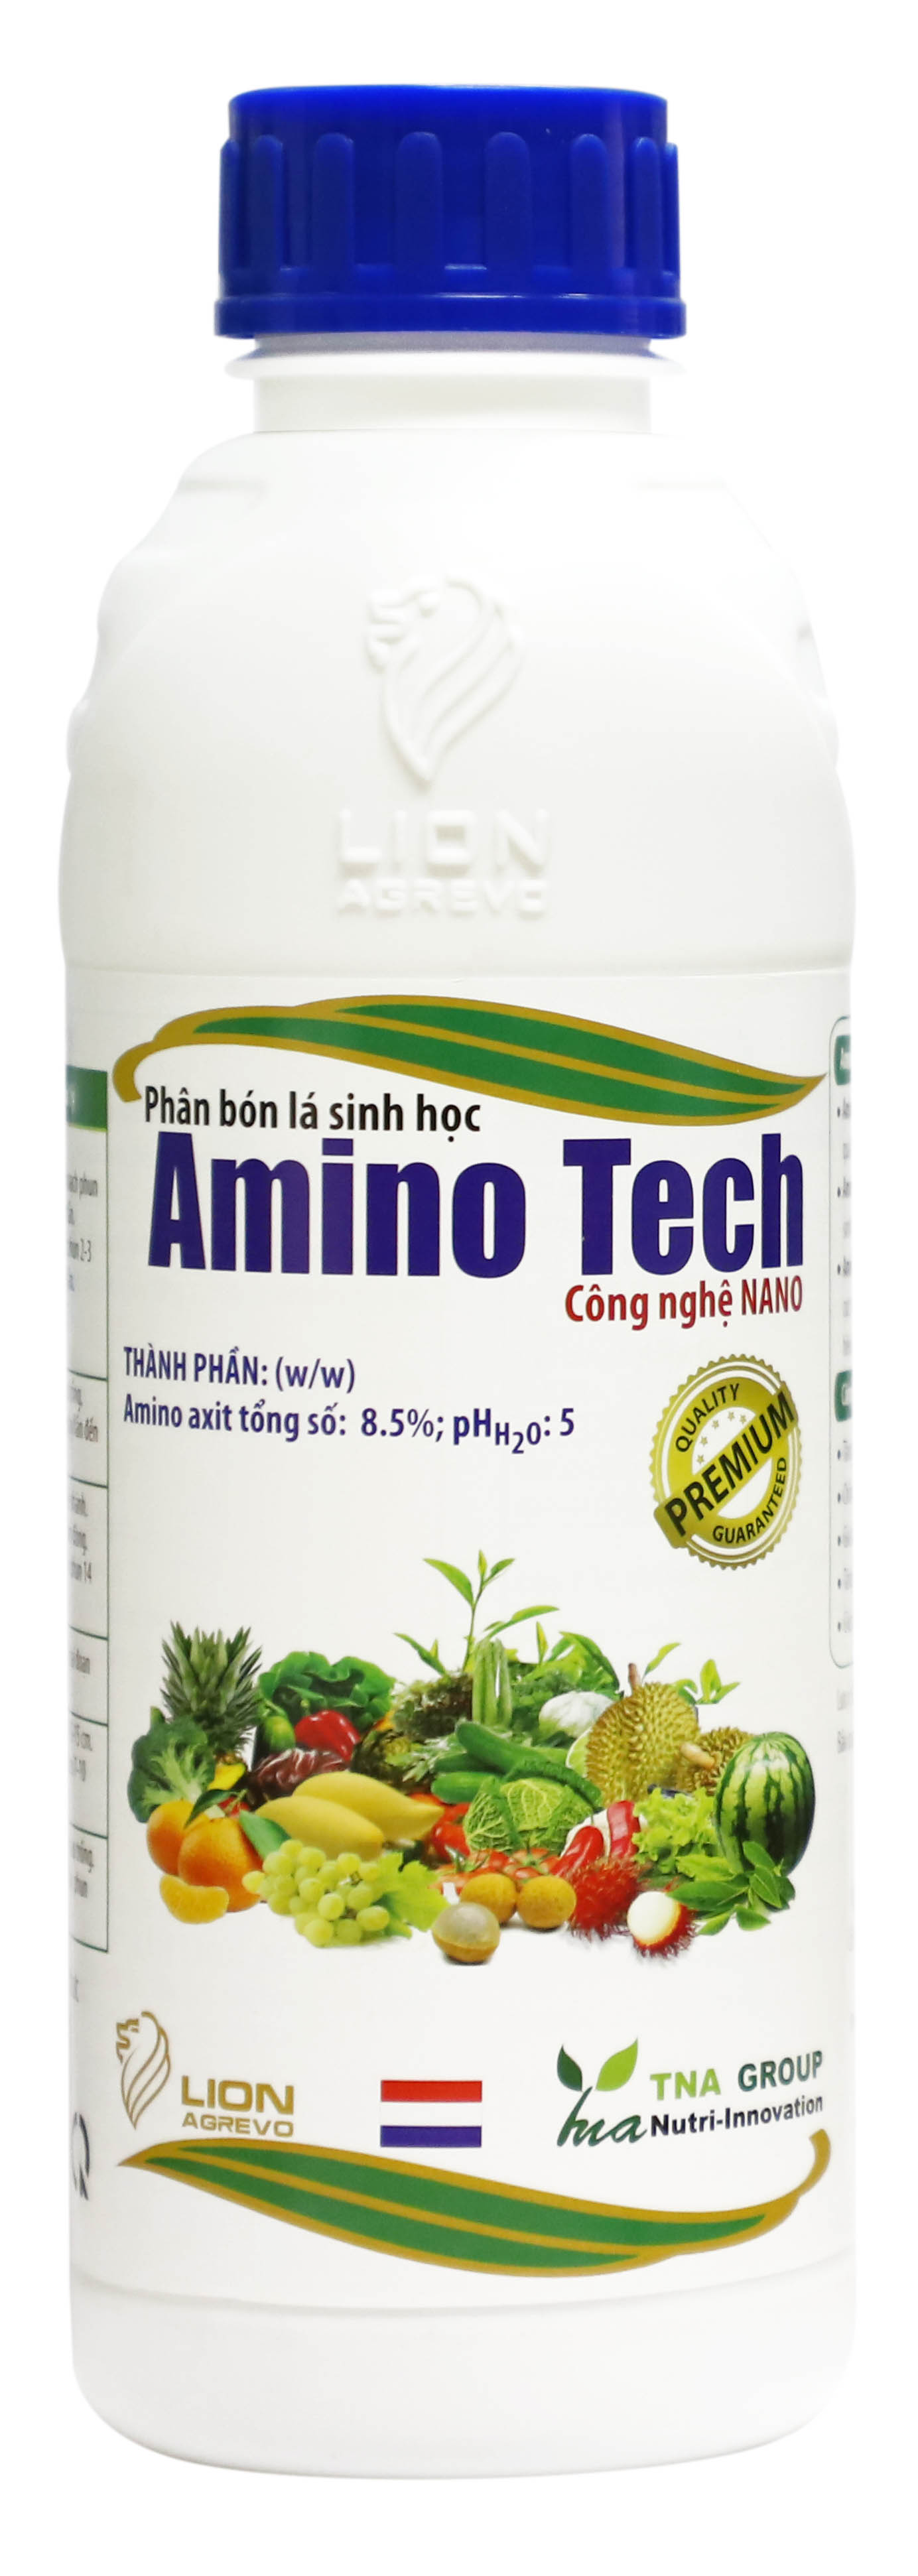 amino tech web